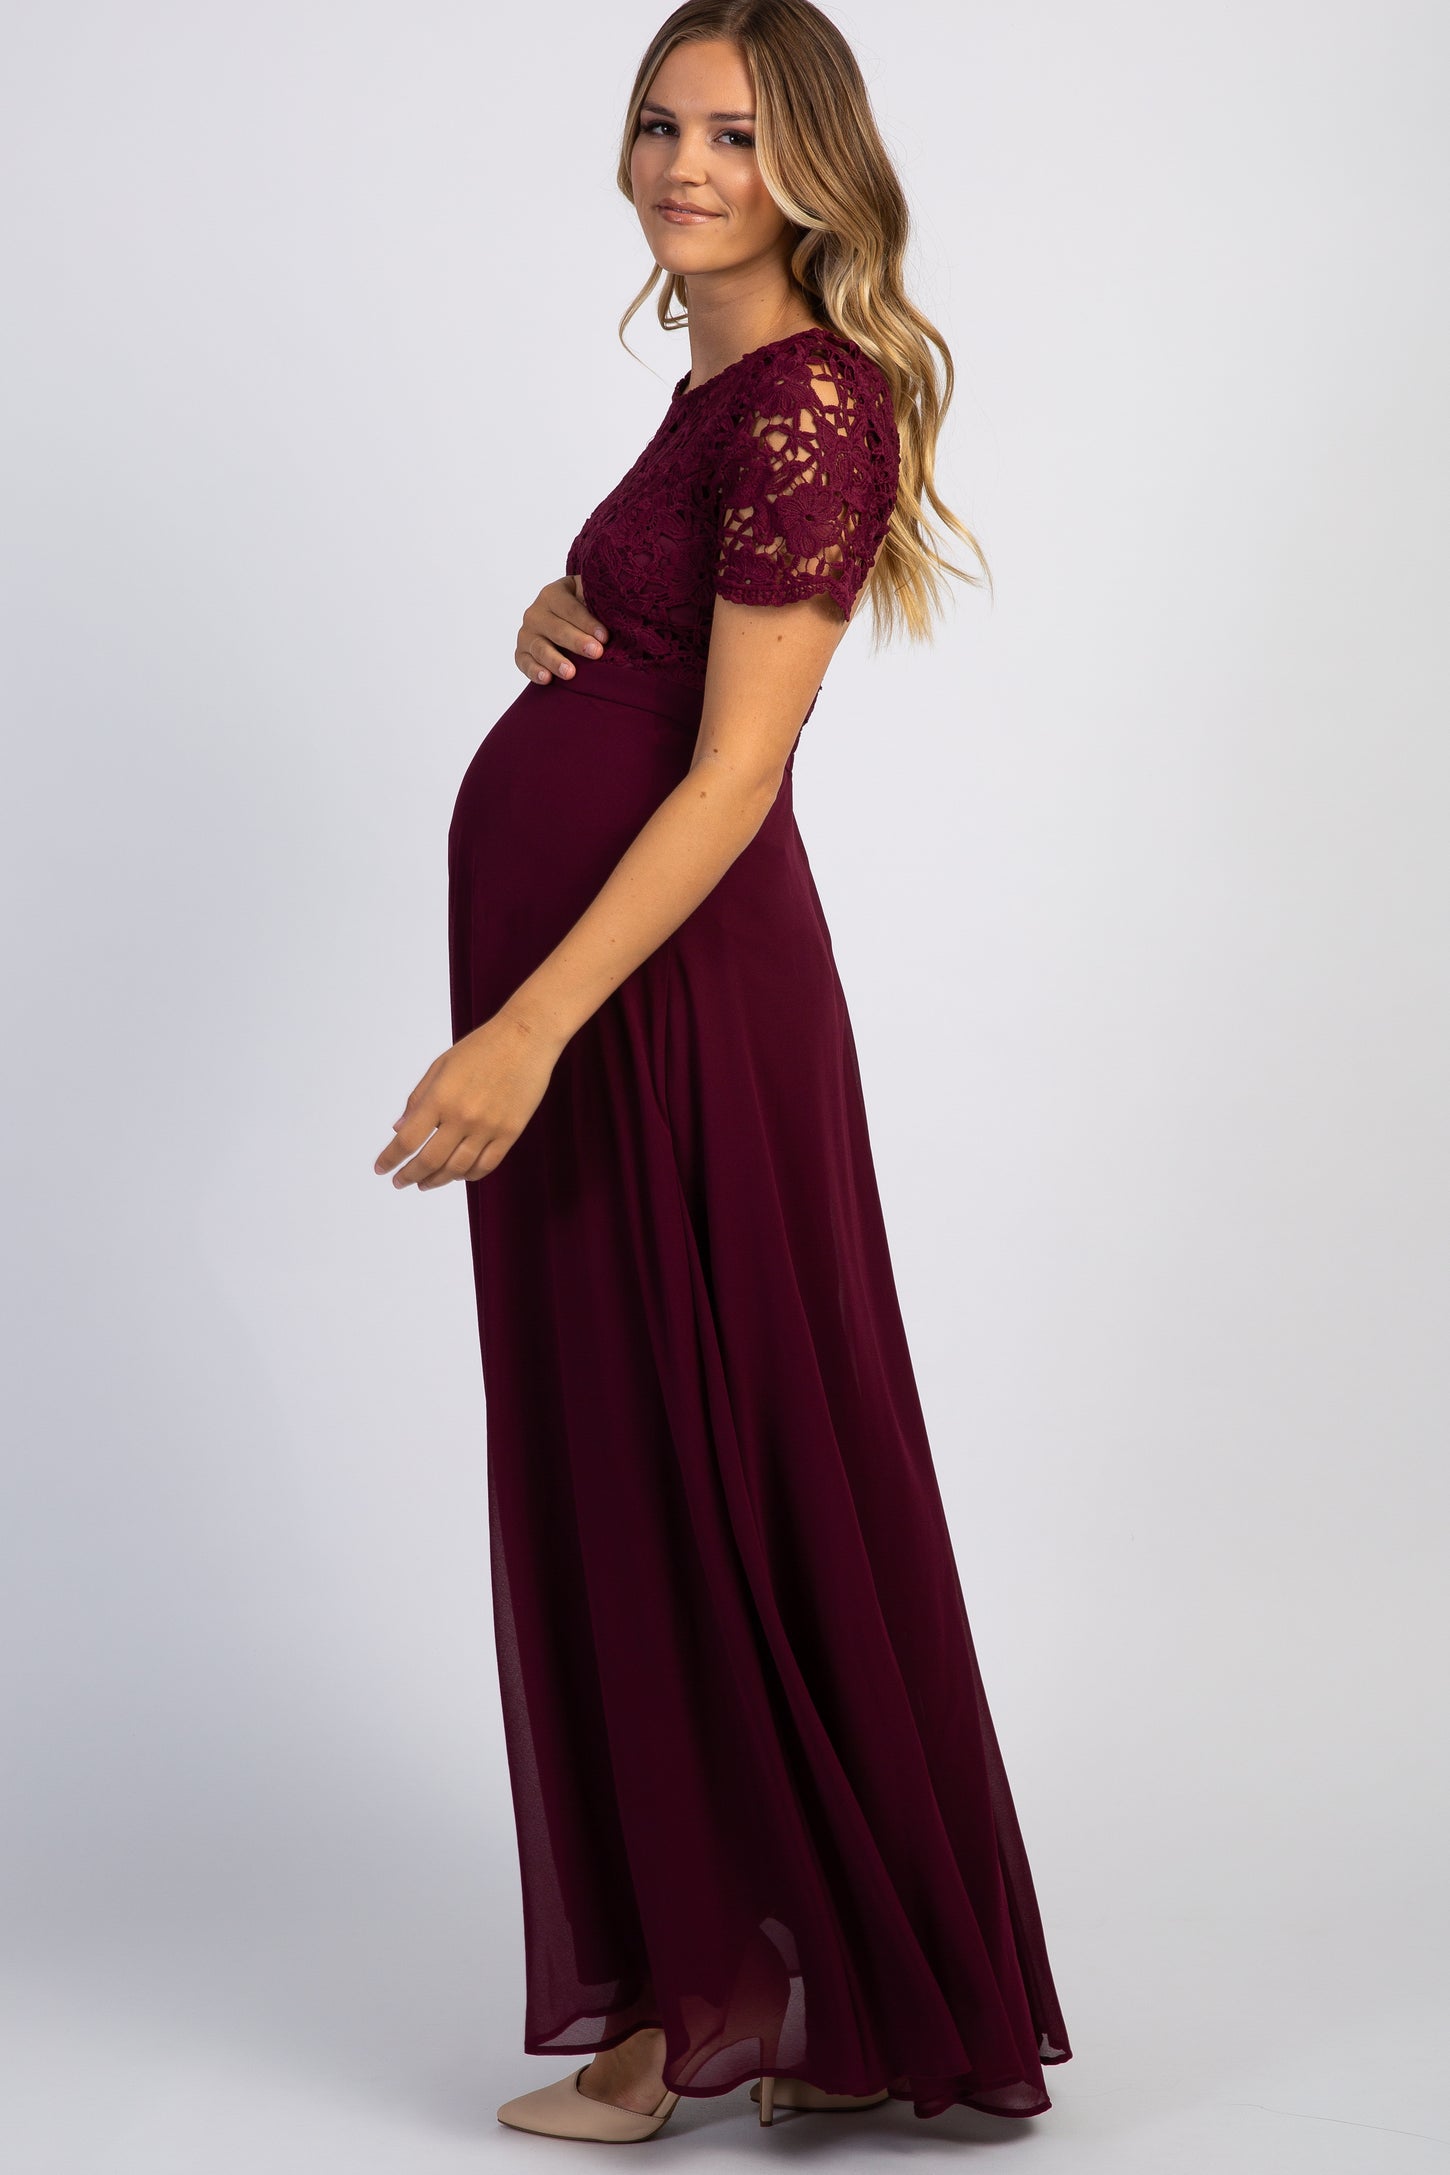 Maternity Dresses, Arianna Crochet Upper Body Open Back Dress